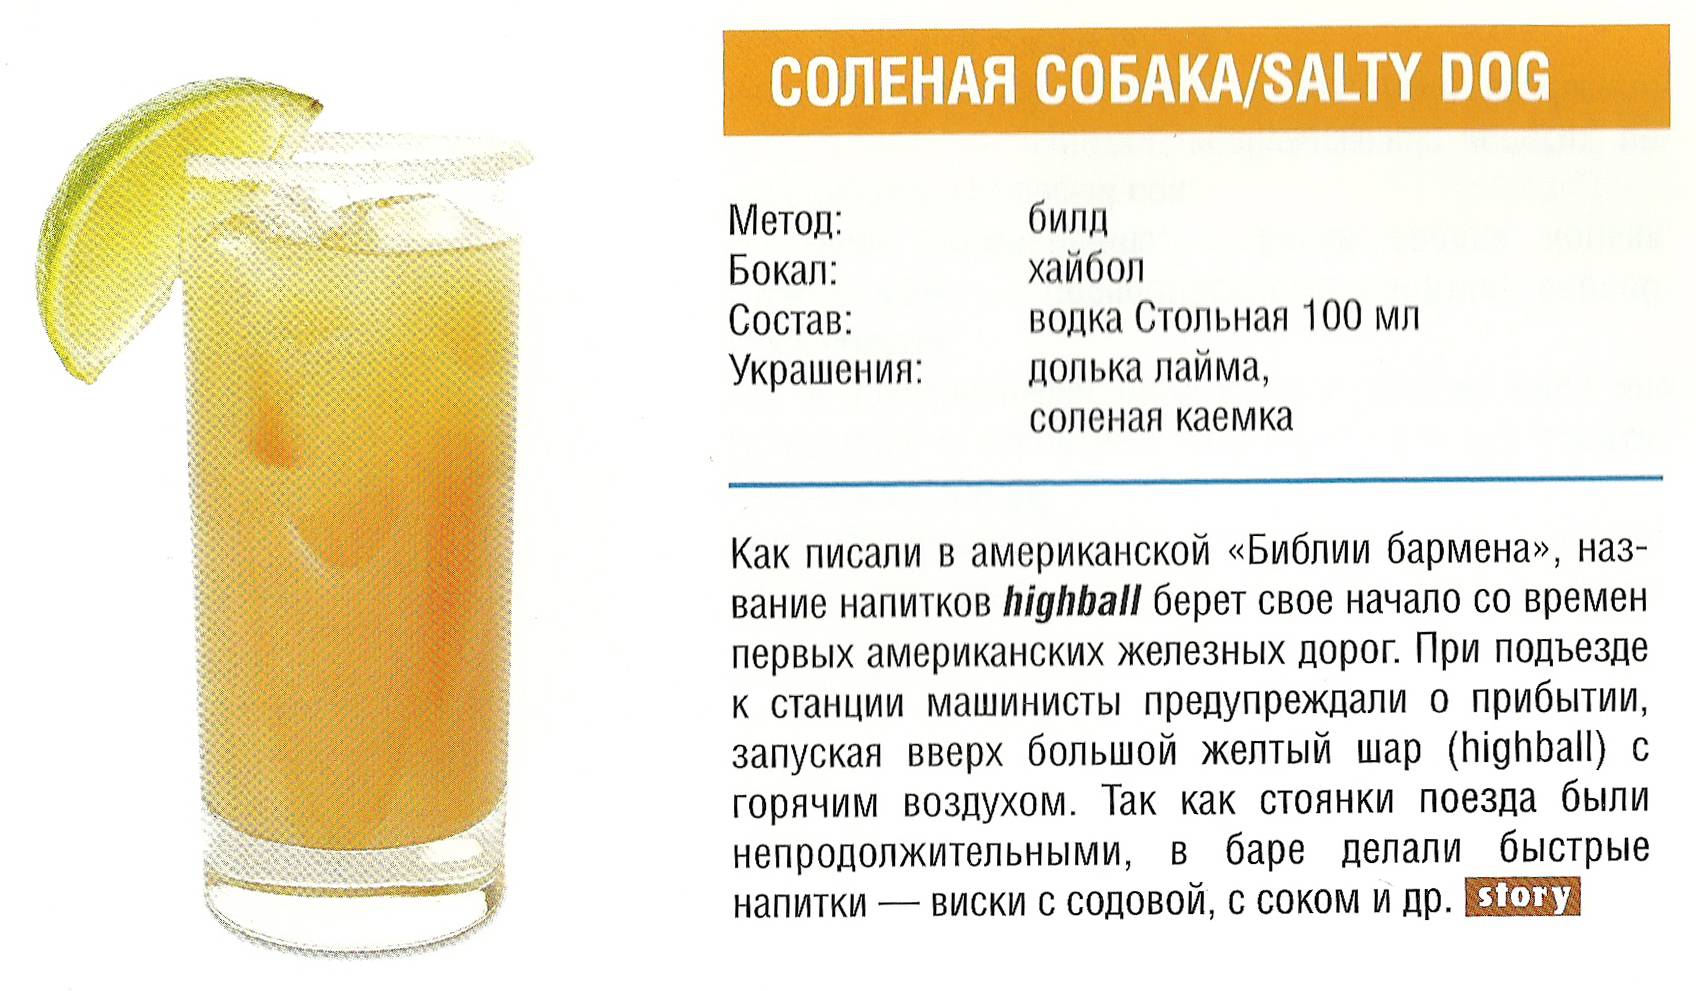 Cocktail milfs